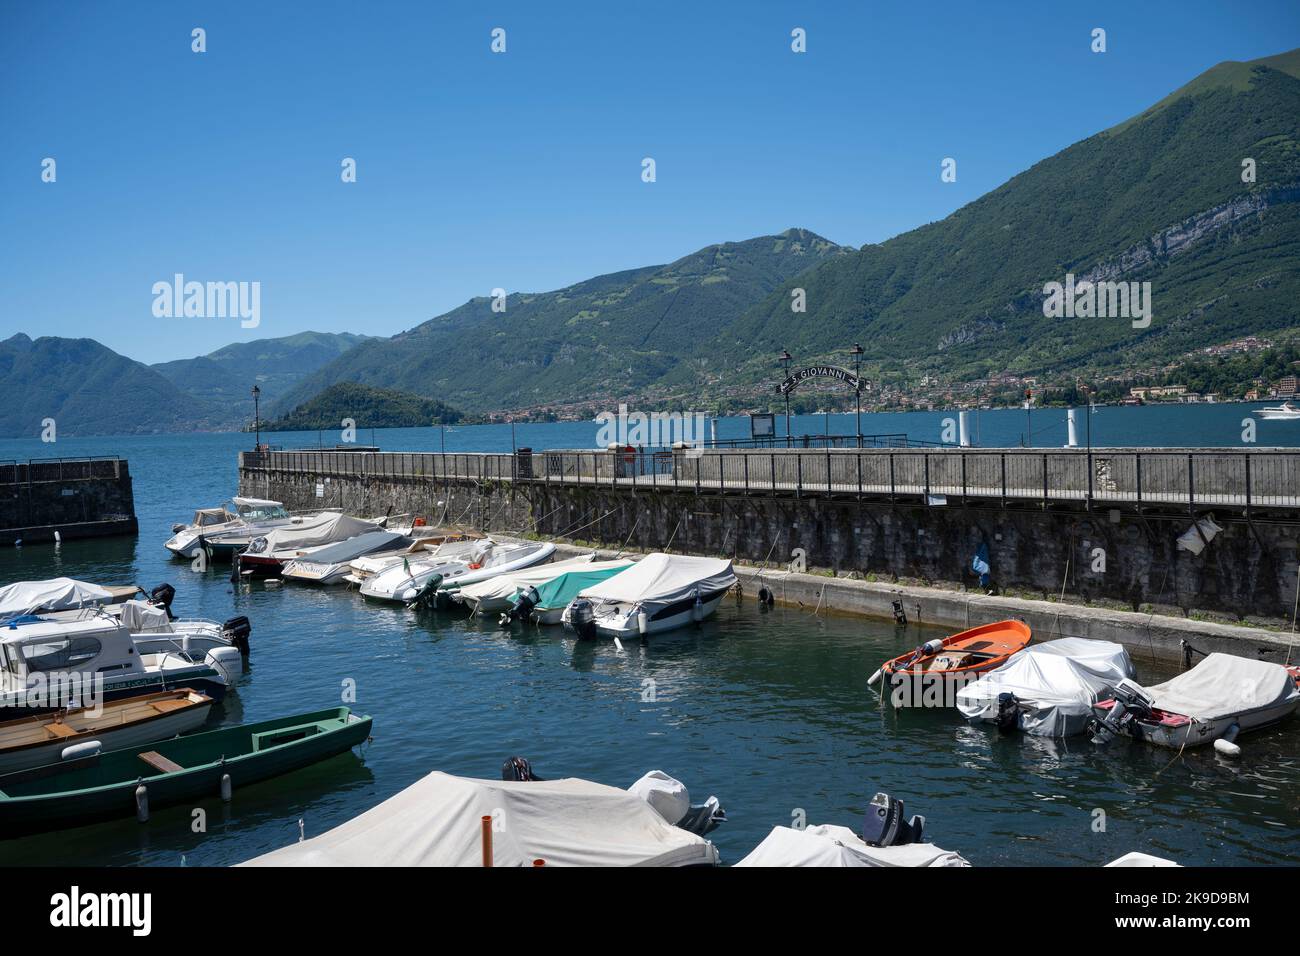 Le port de San Giovanni, Lac de Côme, Lombardie, Italie Banque D'Images